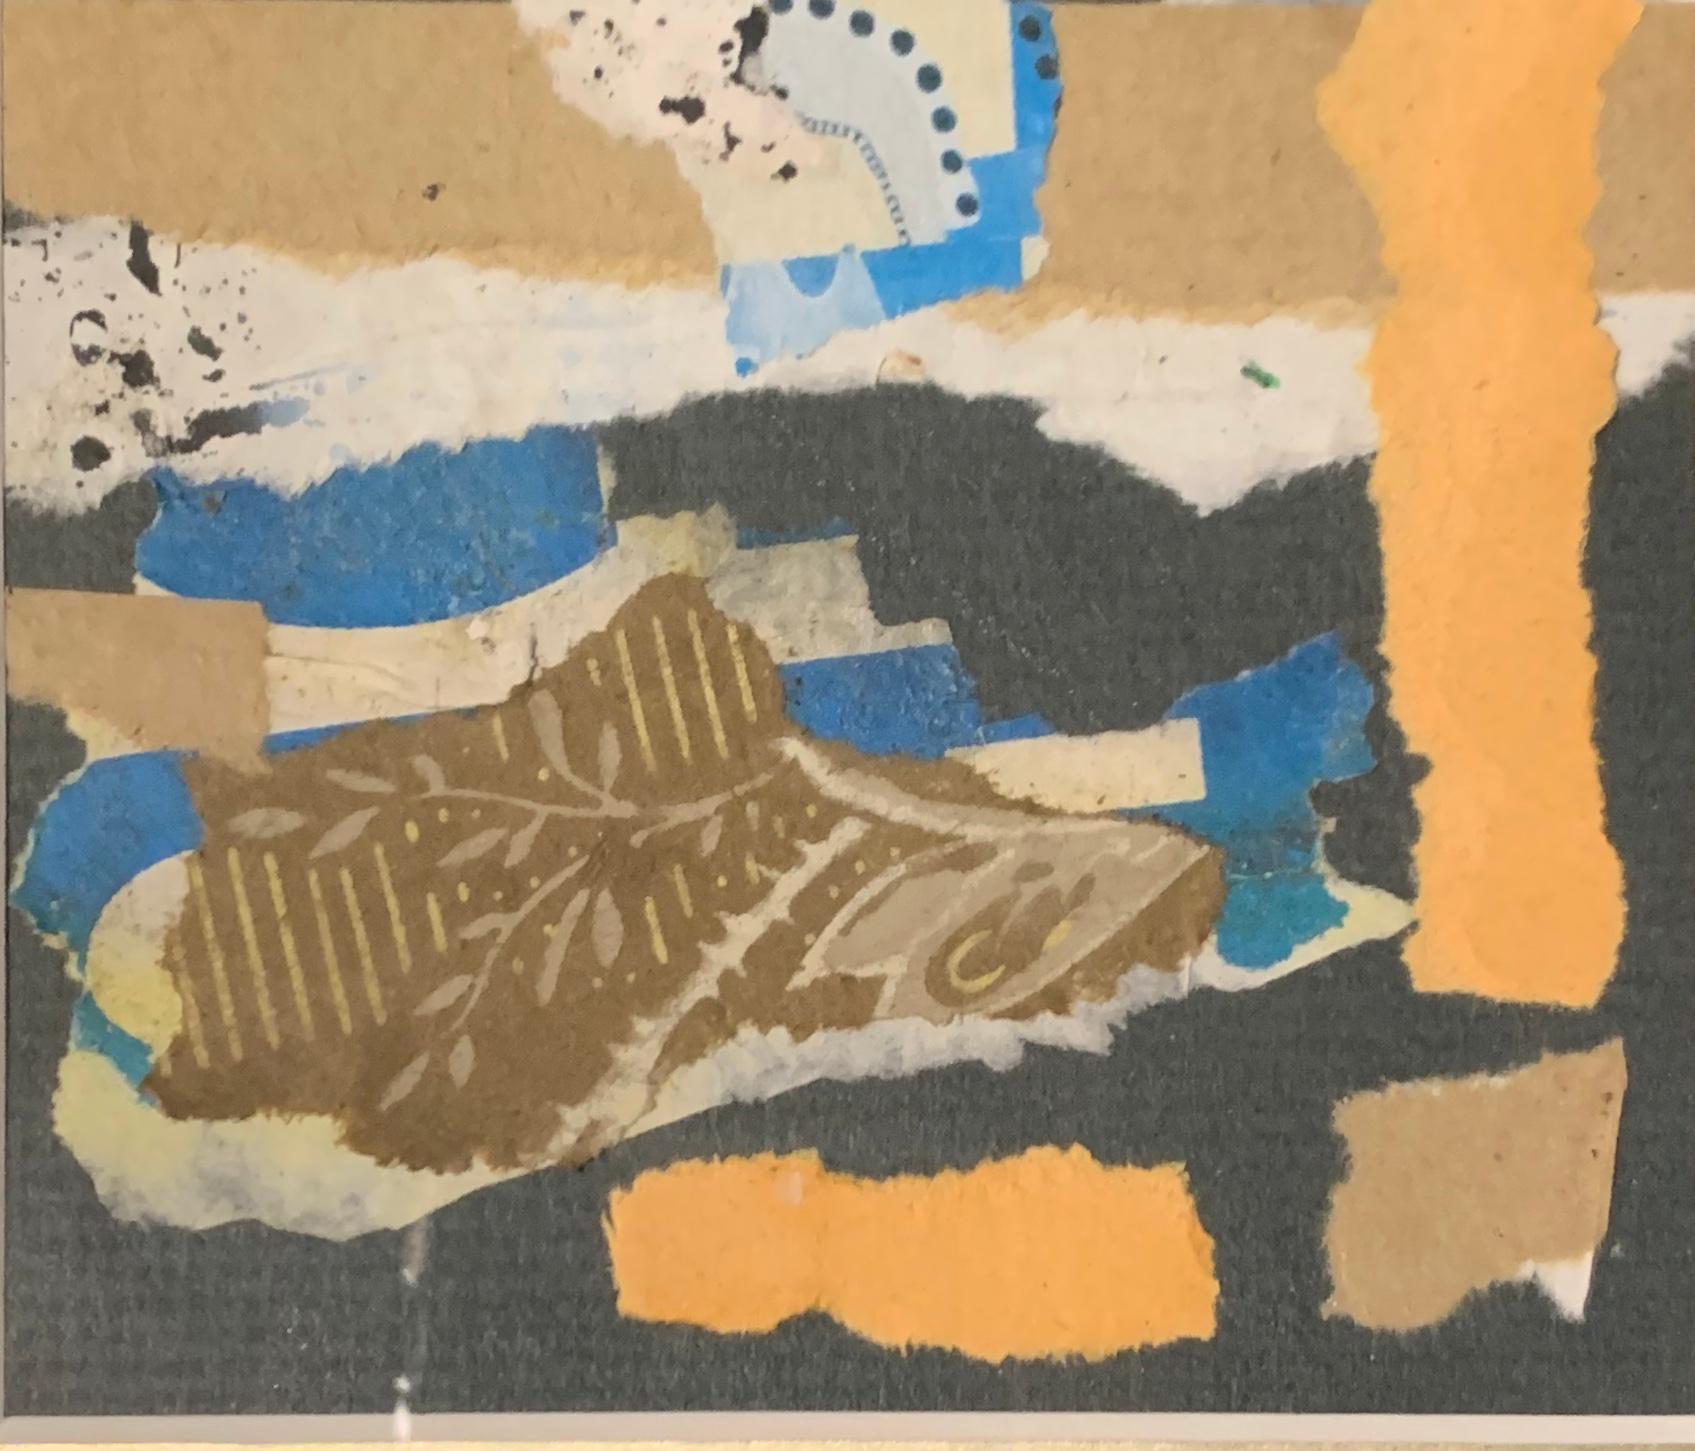 Kleine zeitgenössische Collage des französischen Künstlers Herve Thibault.
Die Farben sind Koralle, Blau, Schwarz und Weiß.
Goldfarbener Holzrahmen mit schwarzem Passepartout.
Passt gut zu P1306.